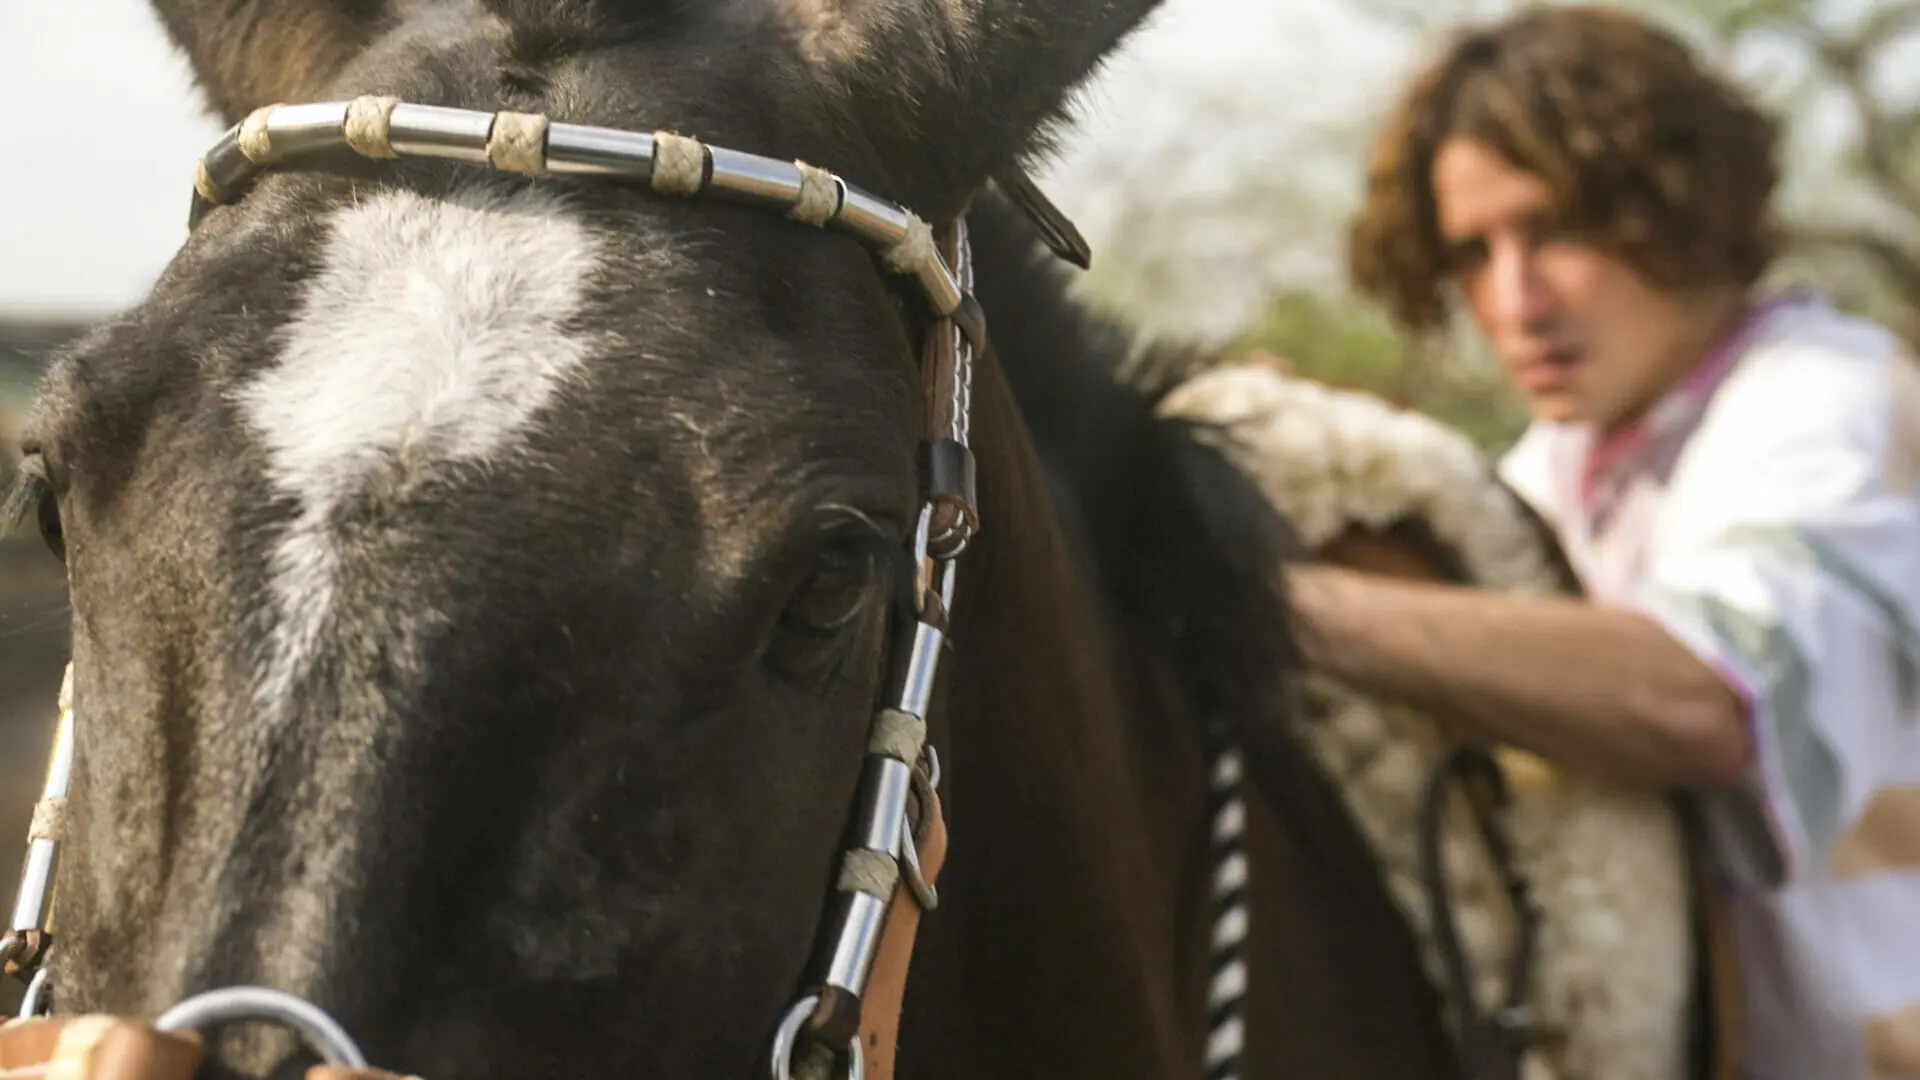 Jove (Jesuíta Barbosa) teme subir no cavalo devido a um trauma